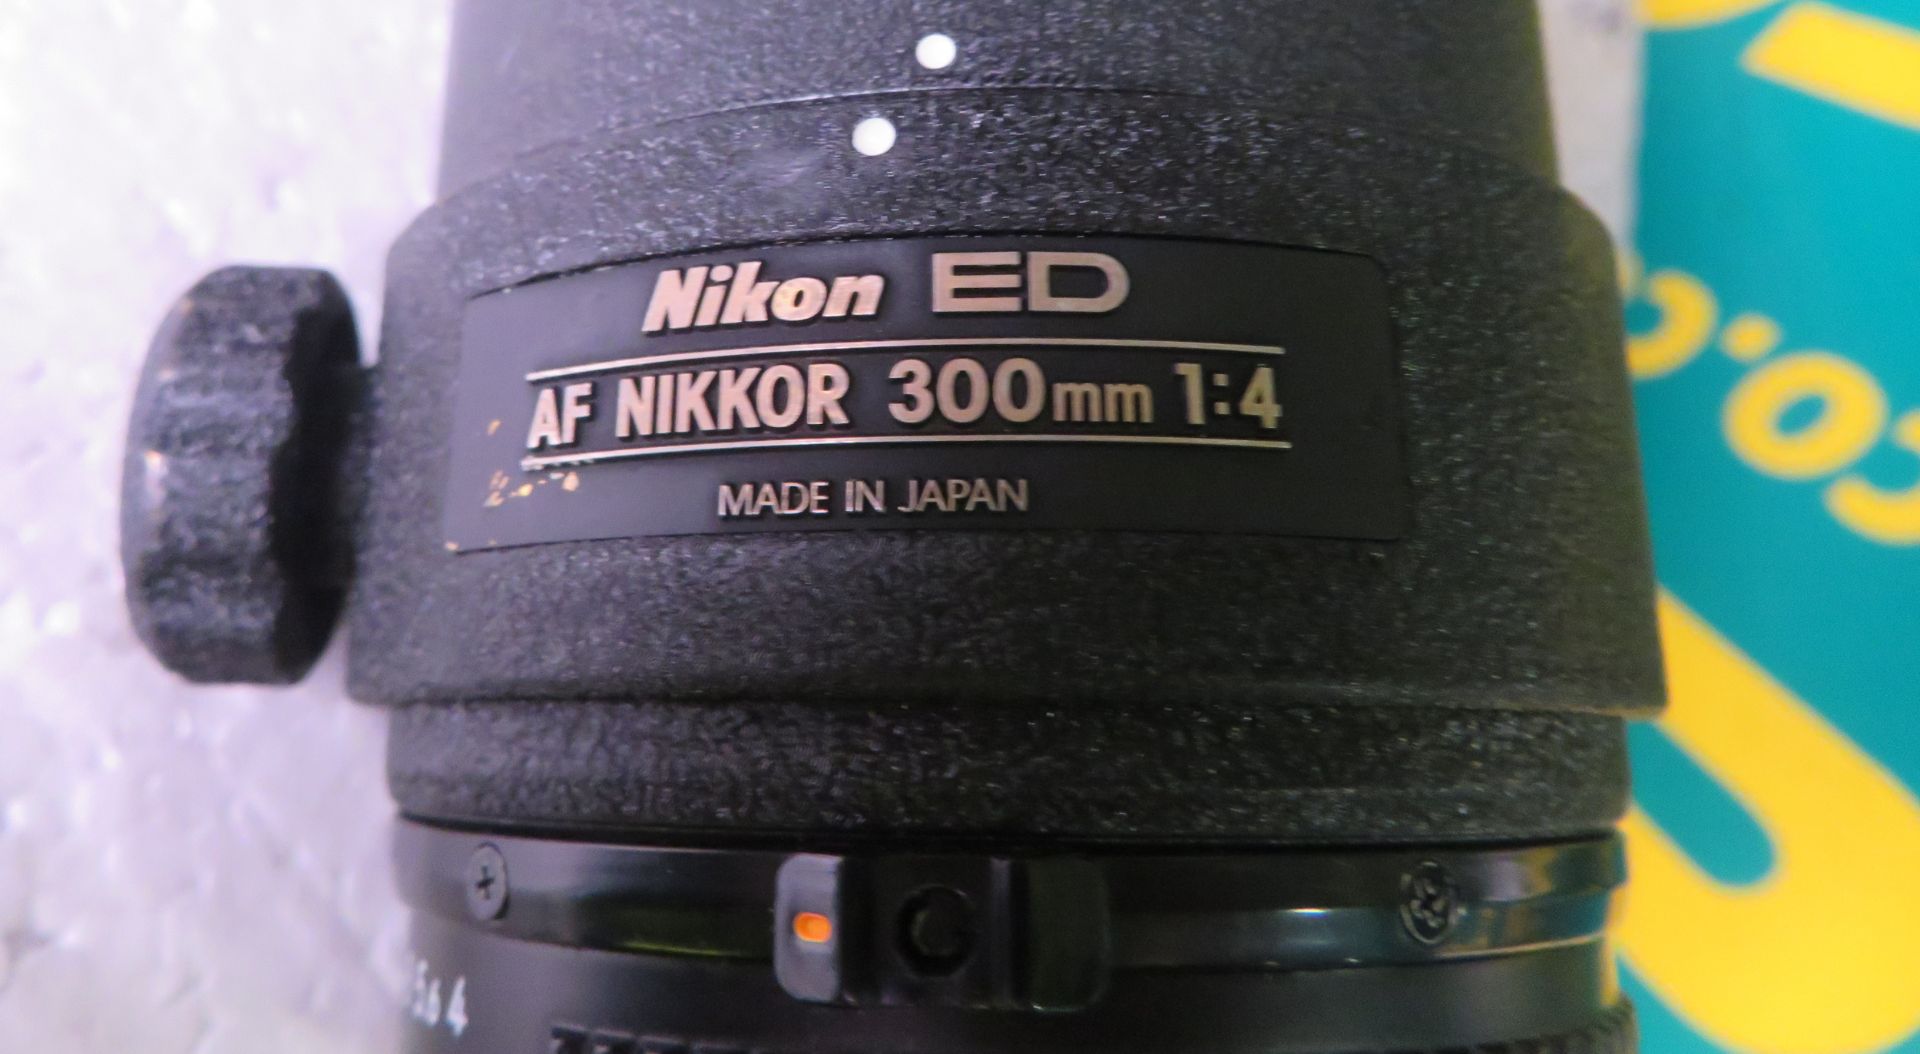 Nikon ED AF Nikkor 300mm 1:4 Lens - serial no. 214411 & Nikon CL-42 Case - Image 4 of 5